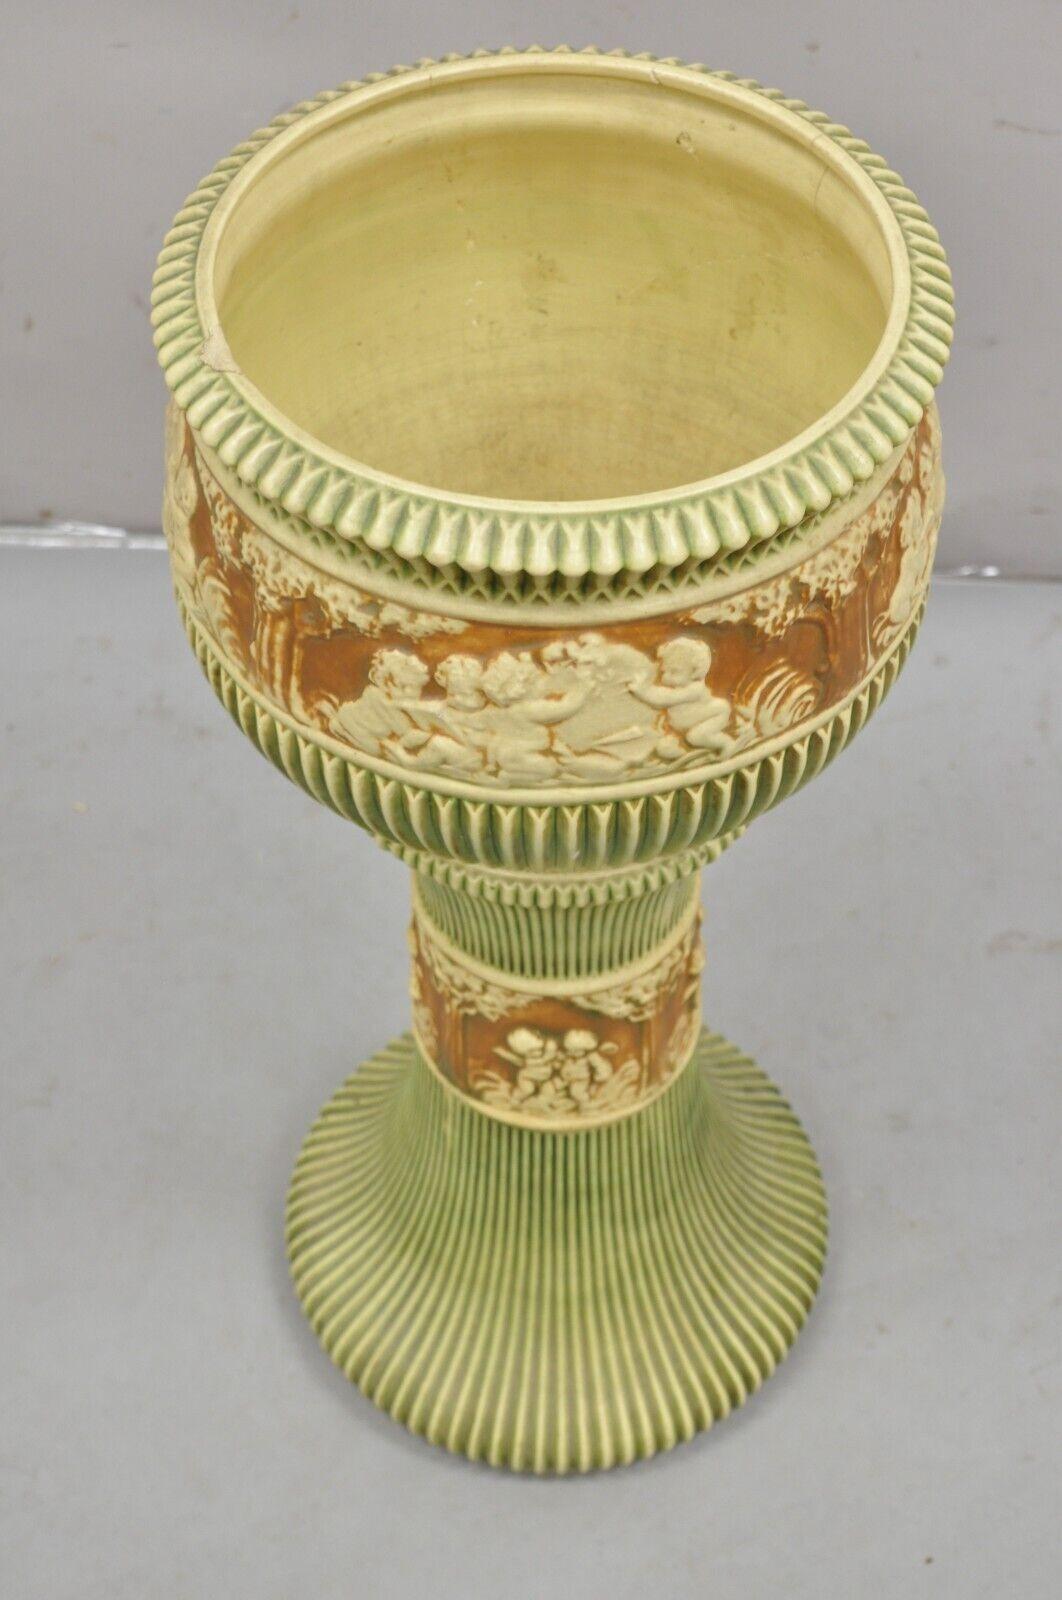 Antique Roseville Donatello Cherubs Art Pottery Jardiniere & Pedestal Flower Pot - 2 Pc Set. Circa Early 1900s. Measurements: 29